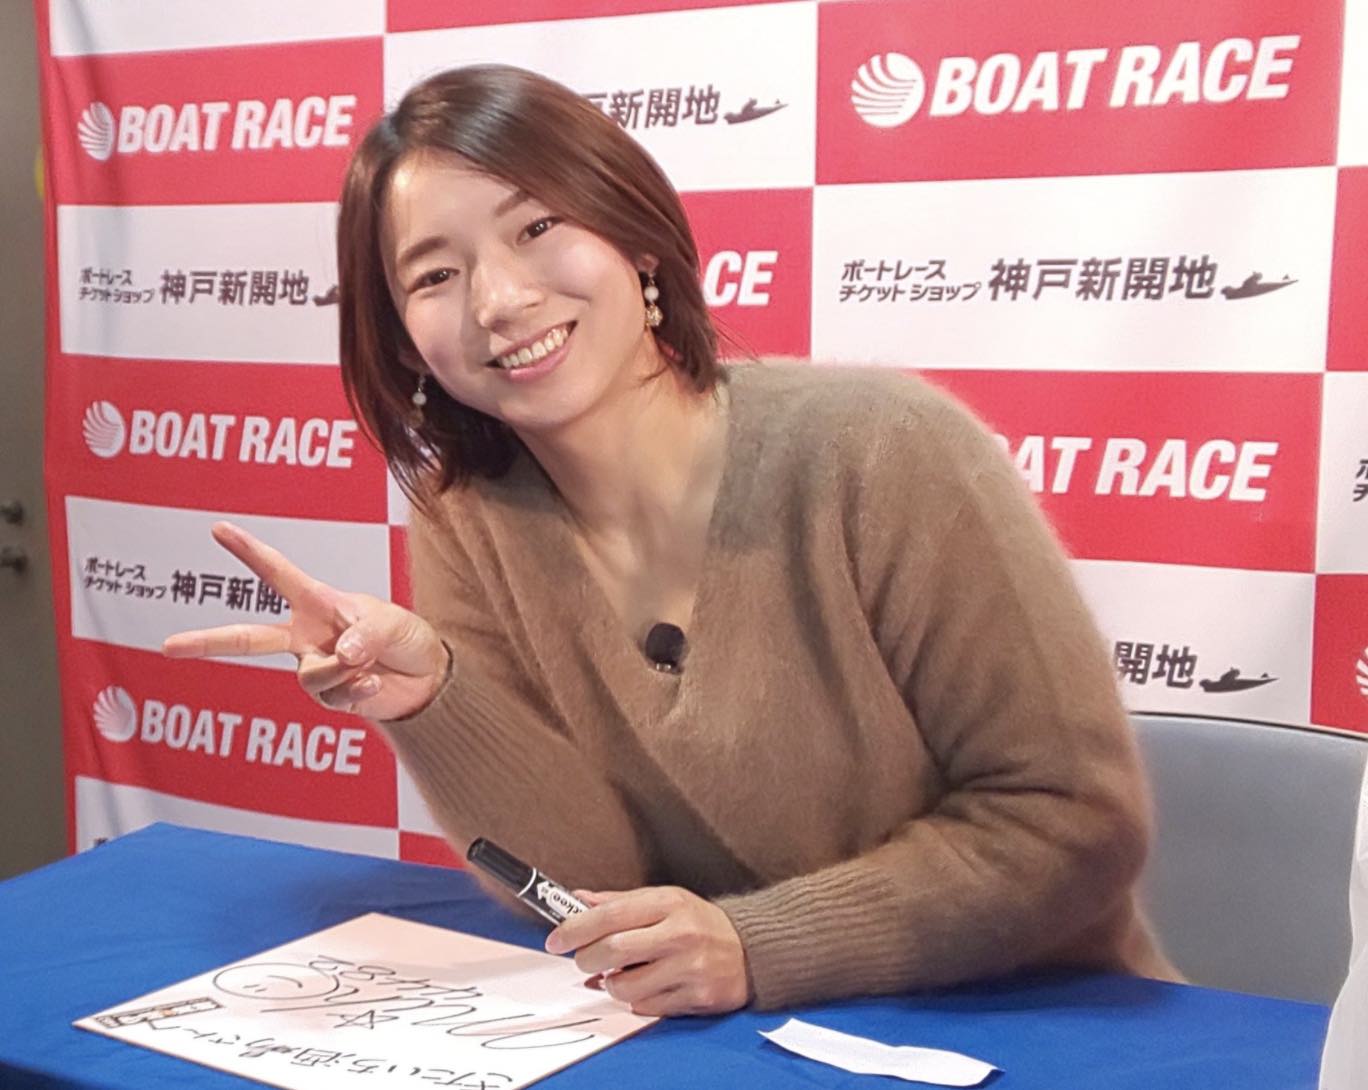 最新のデザイン ボートレース女子レーサー 竹井 奈美 選手 実使用